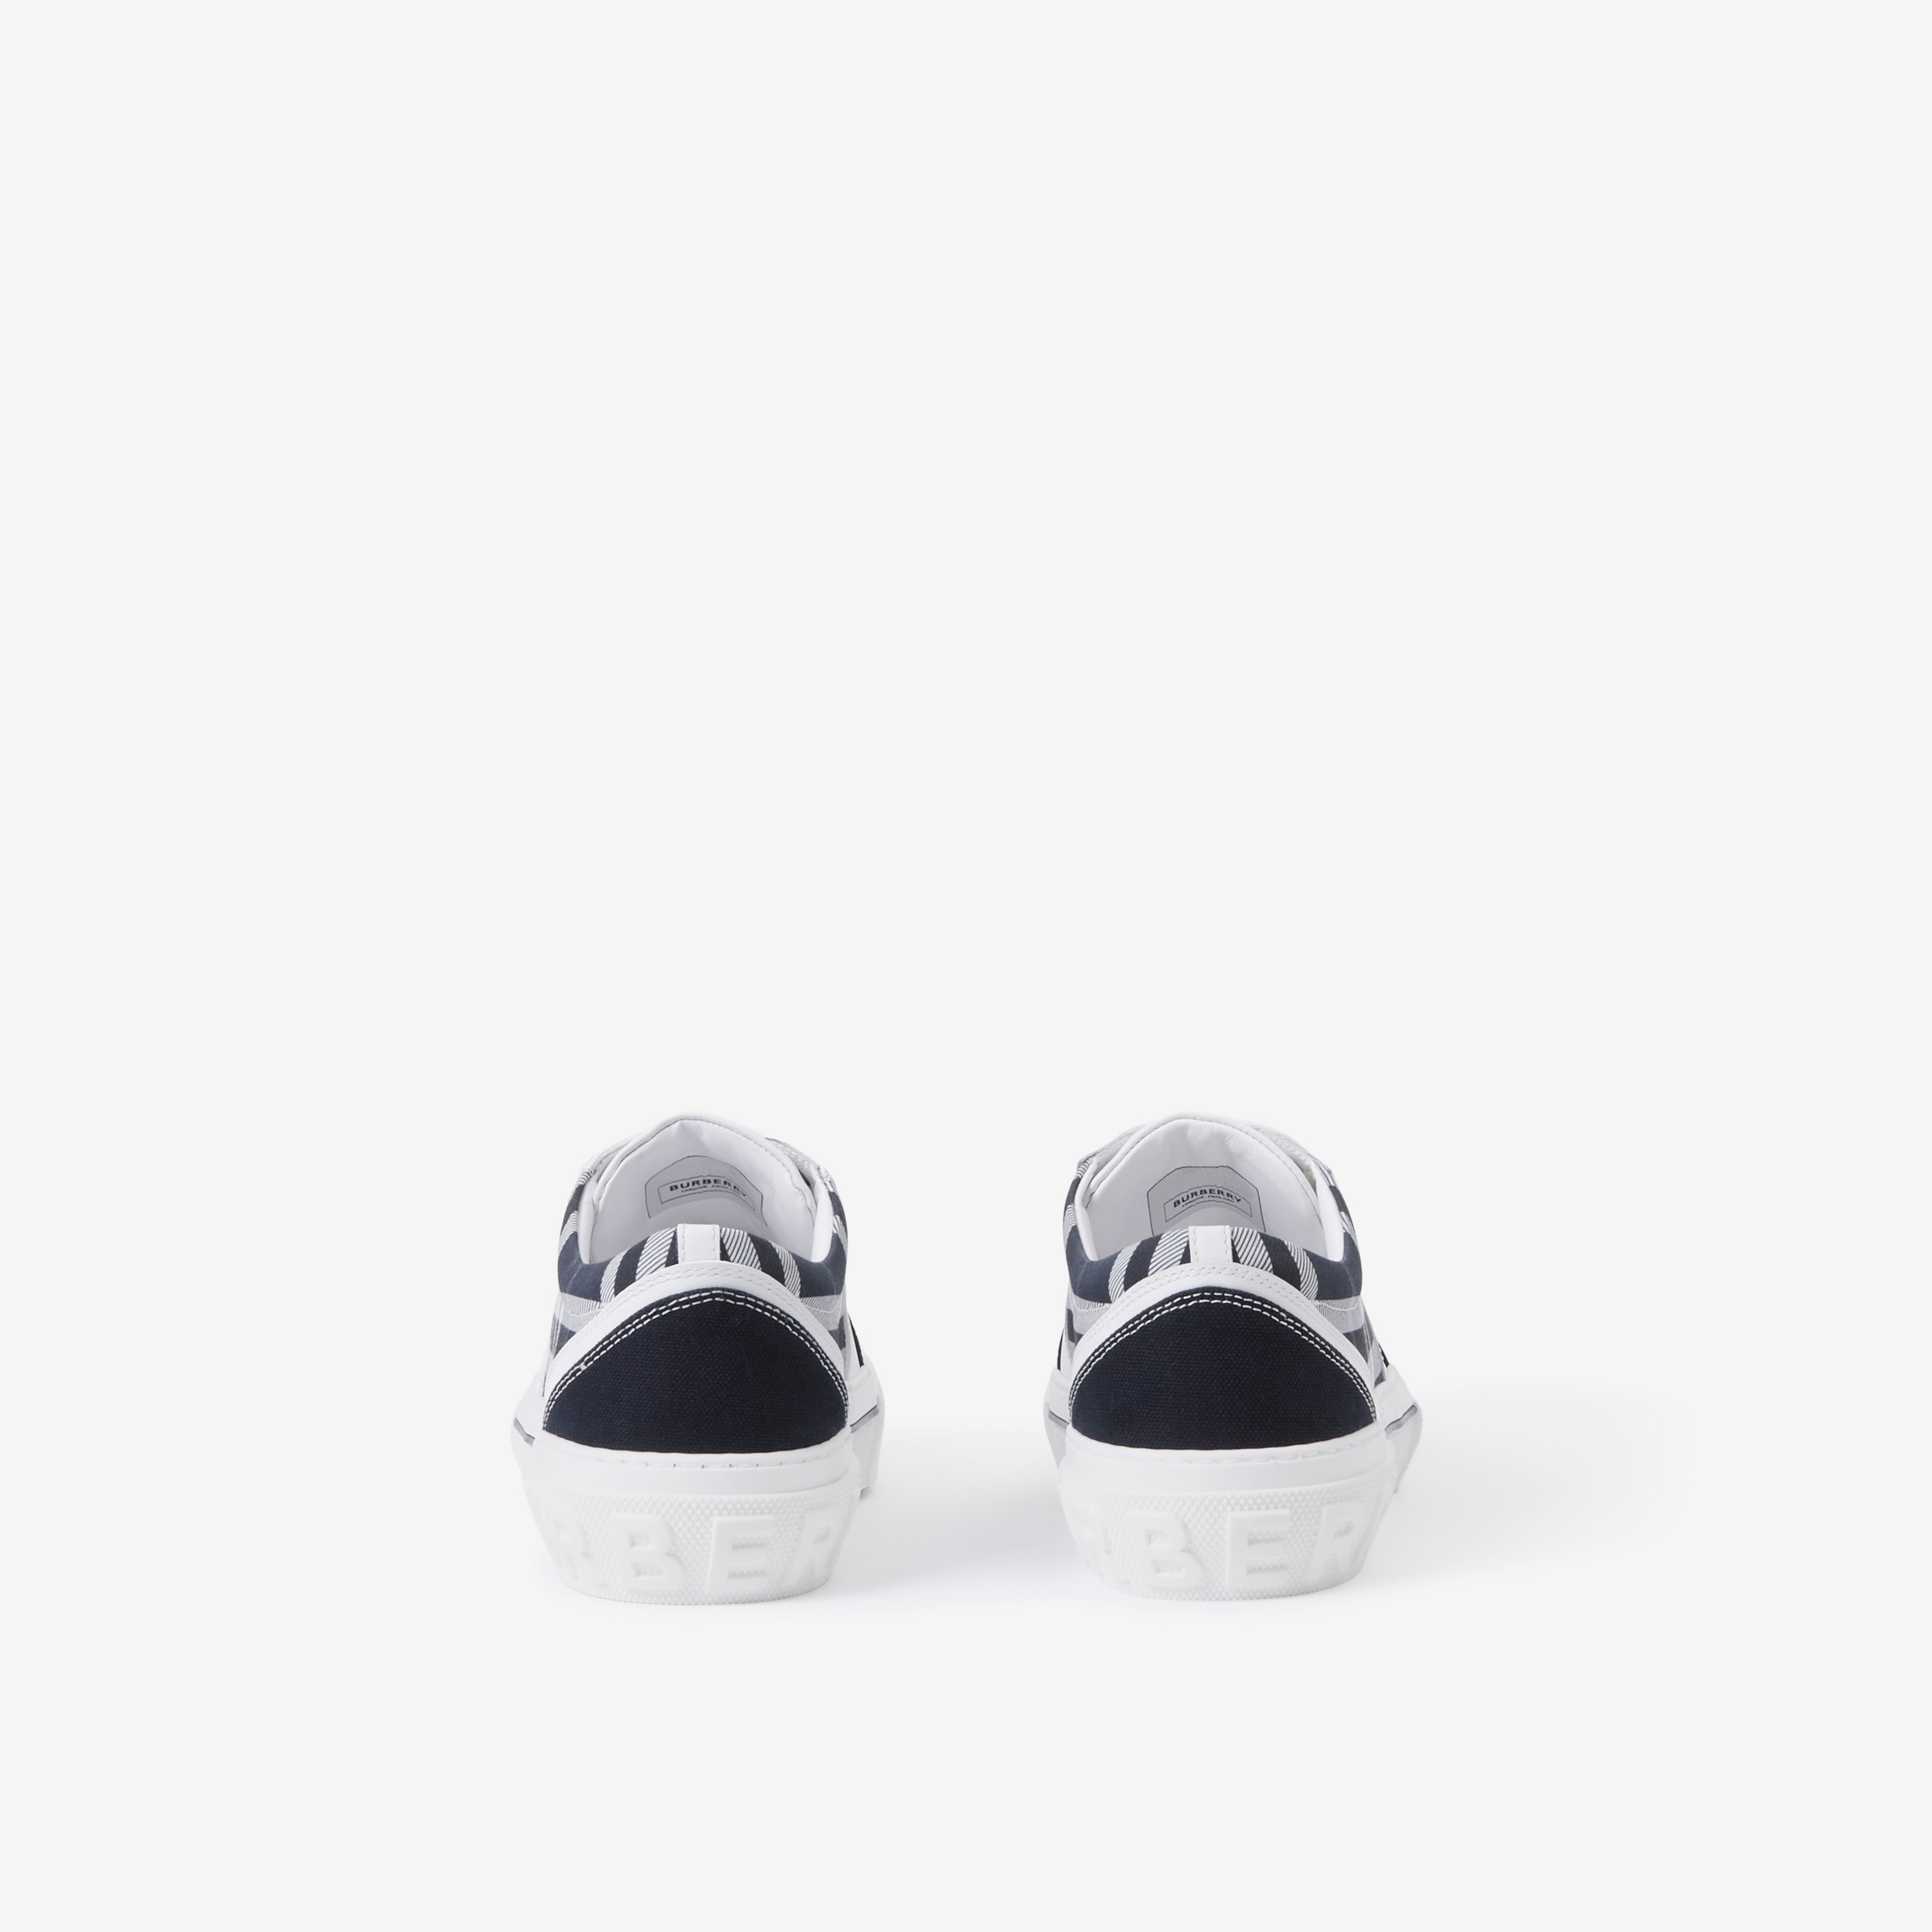 Sneaker in pelle, cotone e Check (Bianco/navy) - Uomo | Sito ufficiale Burberry® - 3